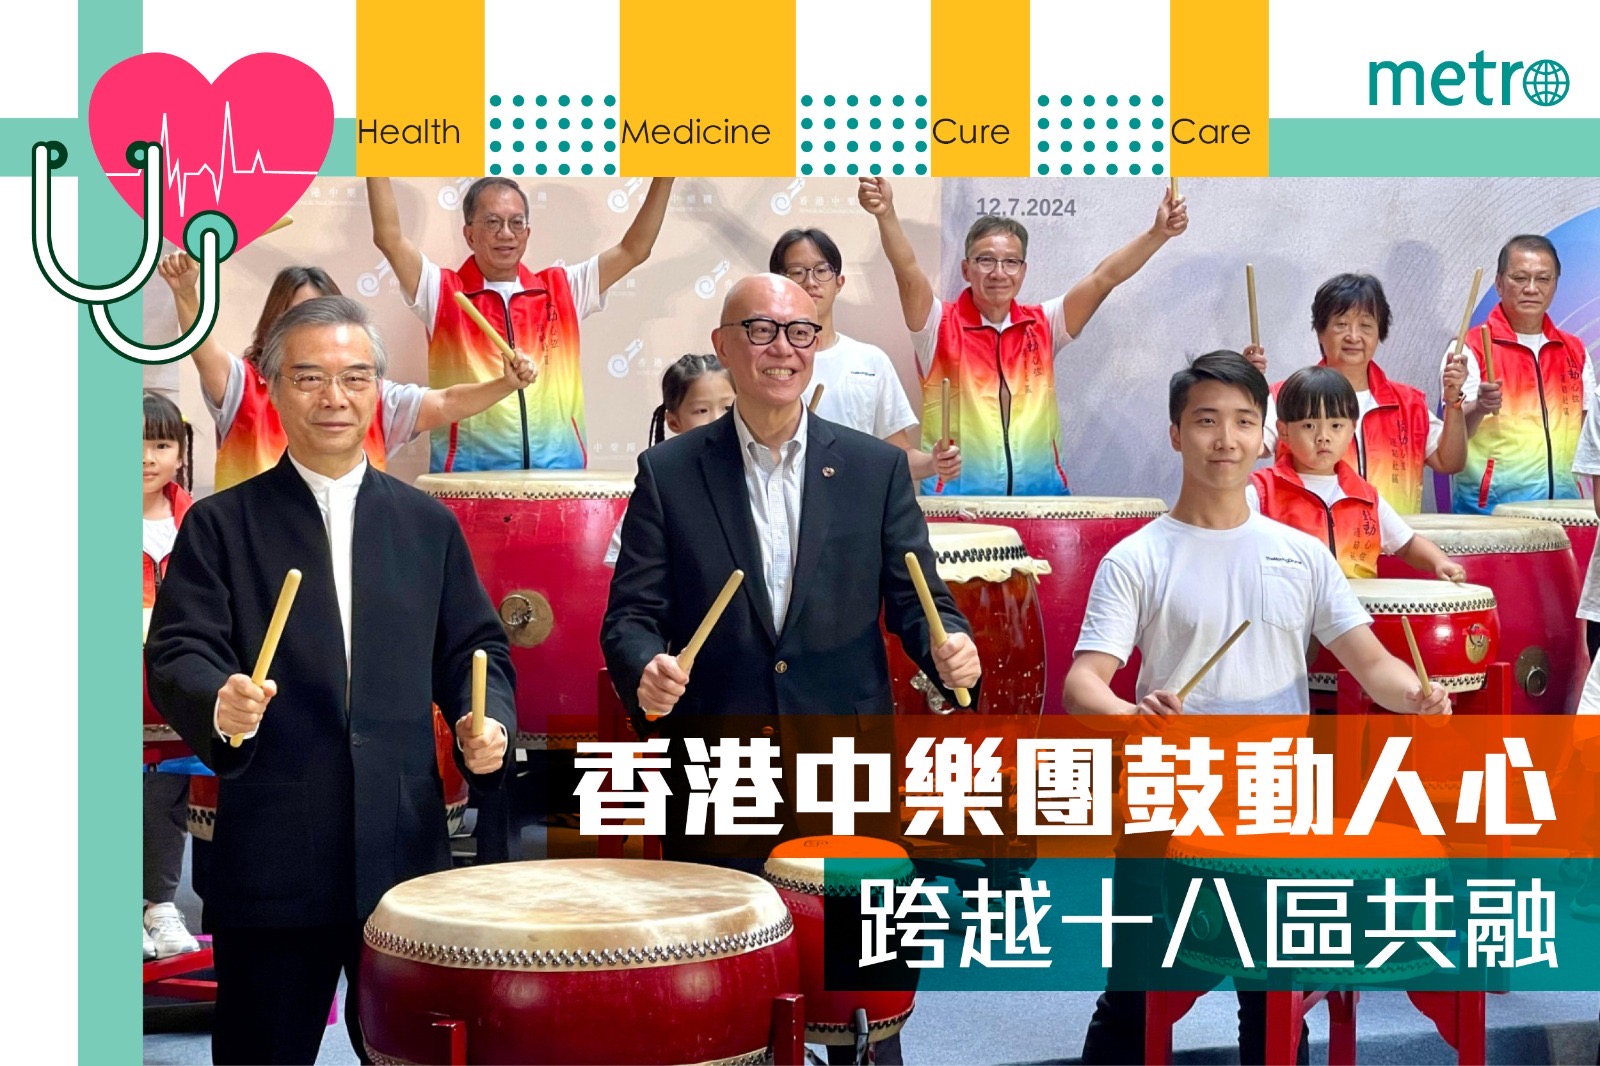 香港中樂團鼓動人心 跨越十八區共融